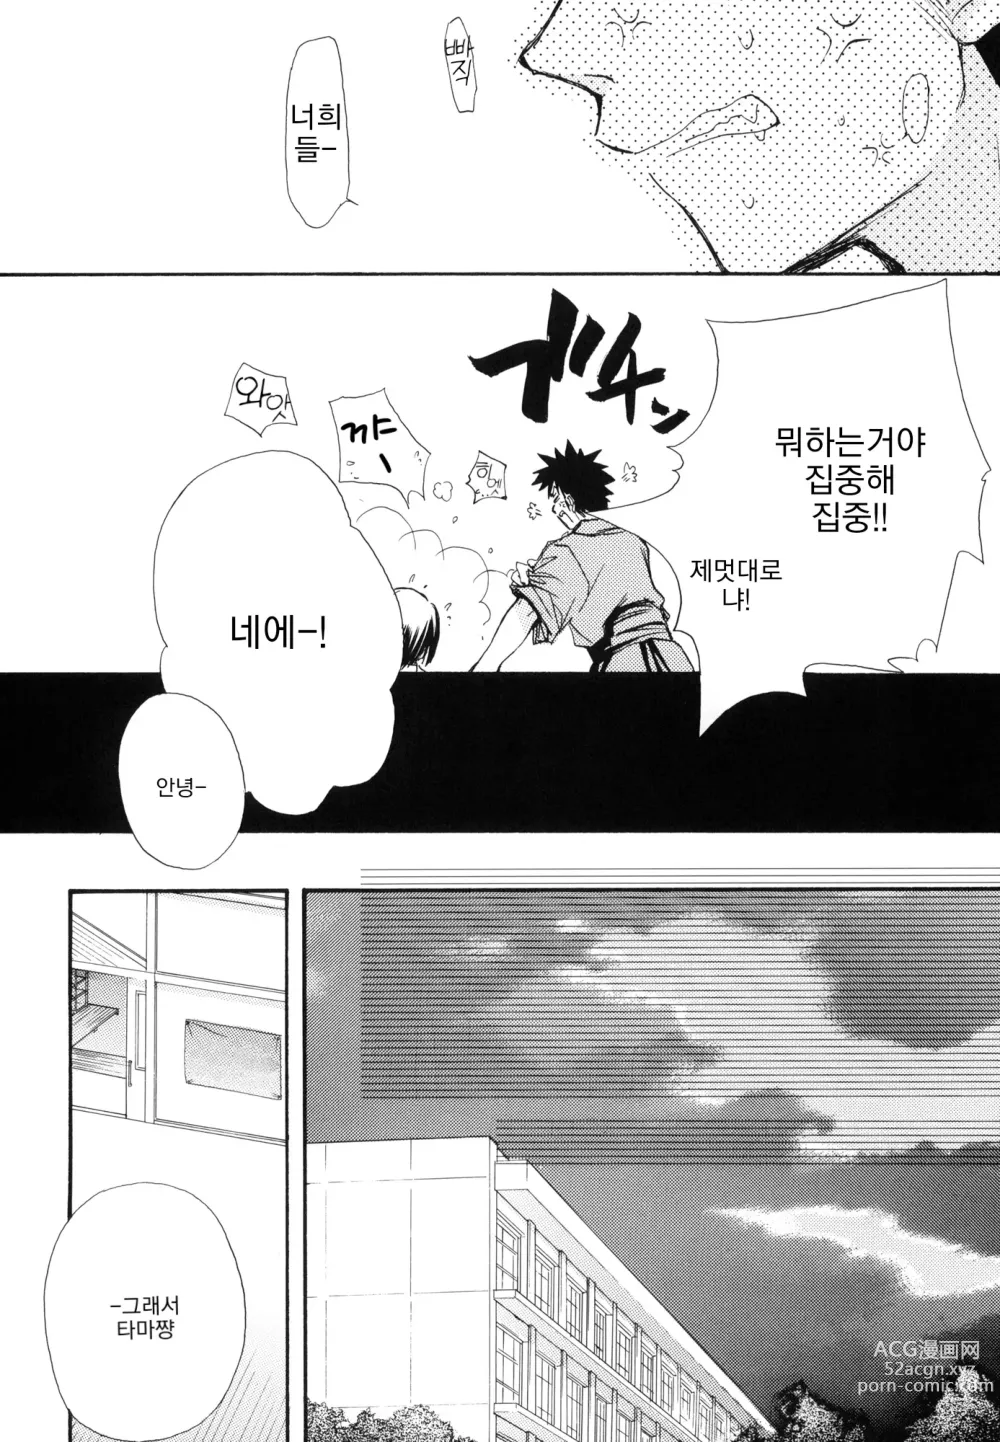 Page 7 of doujinshi 순간접착사랑